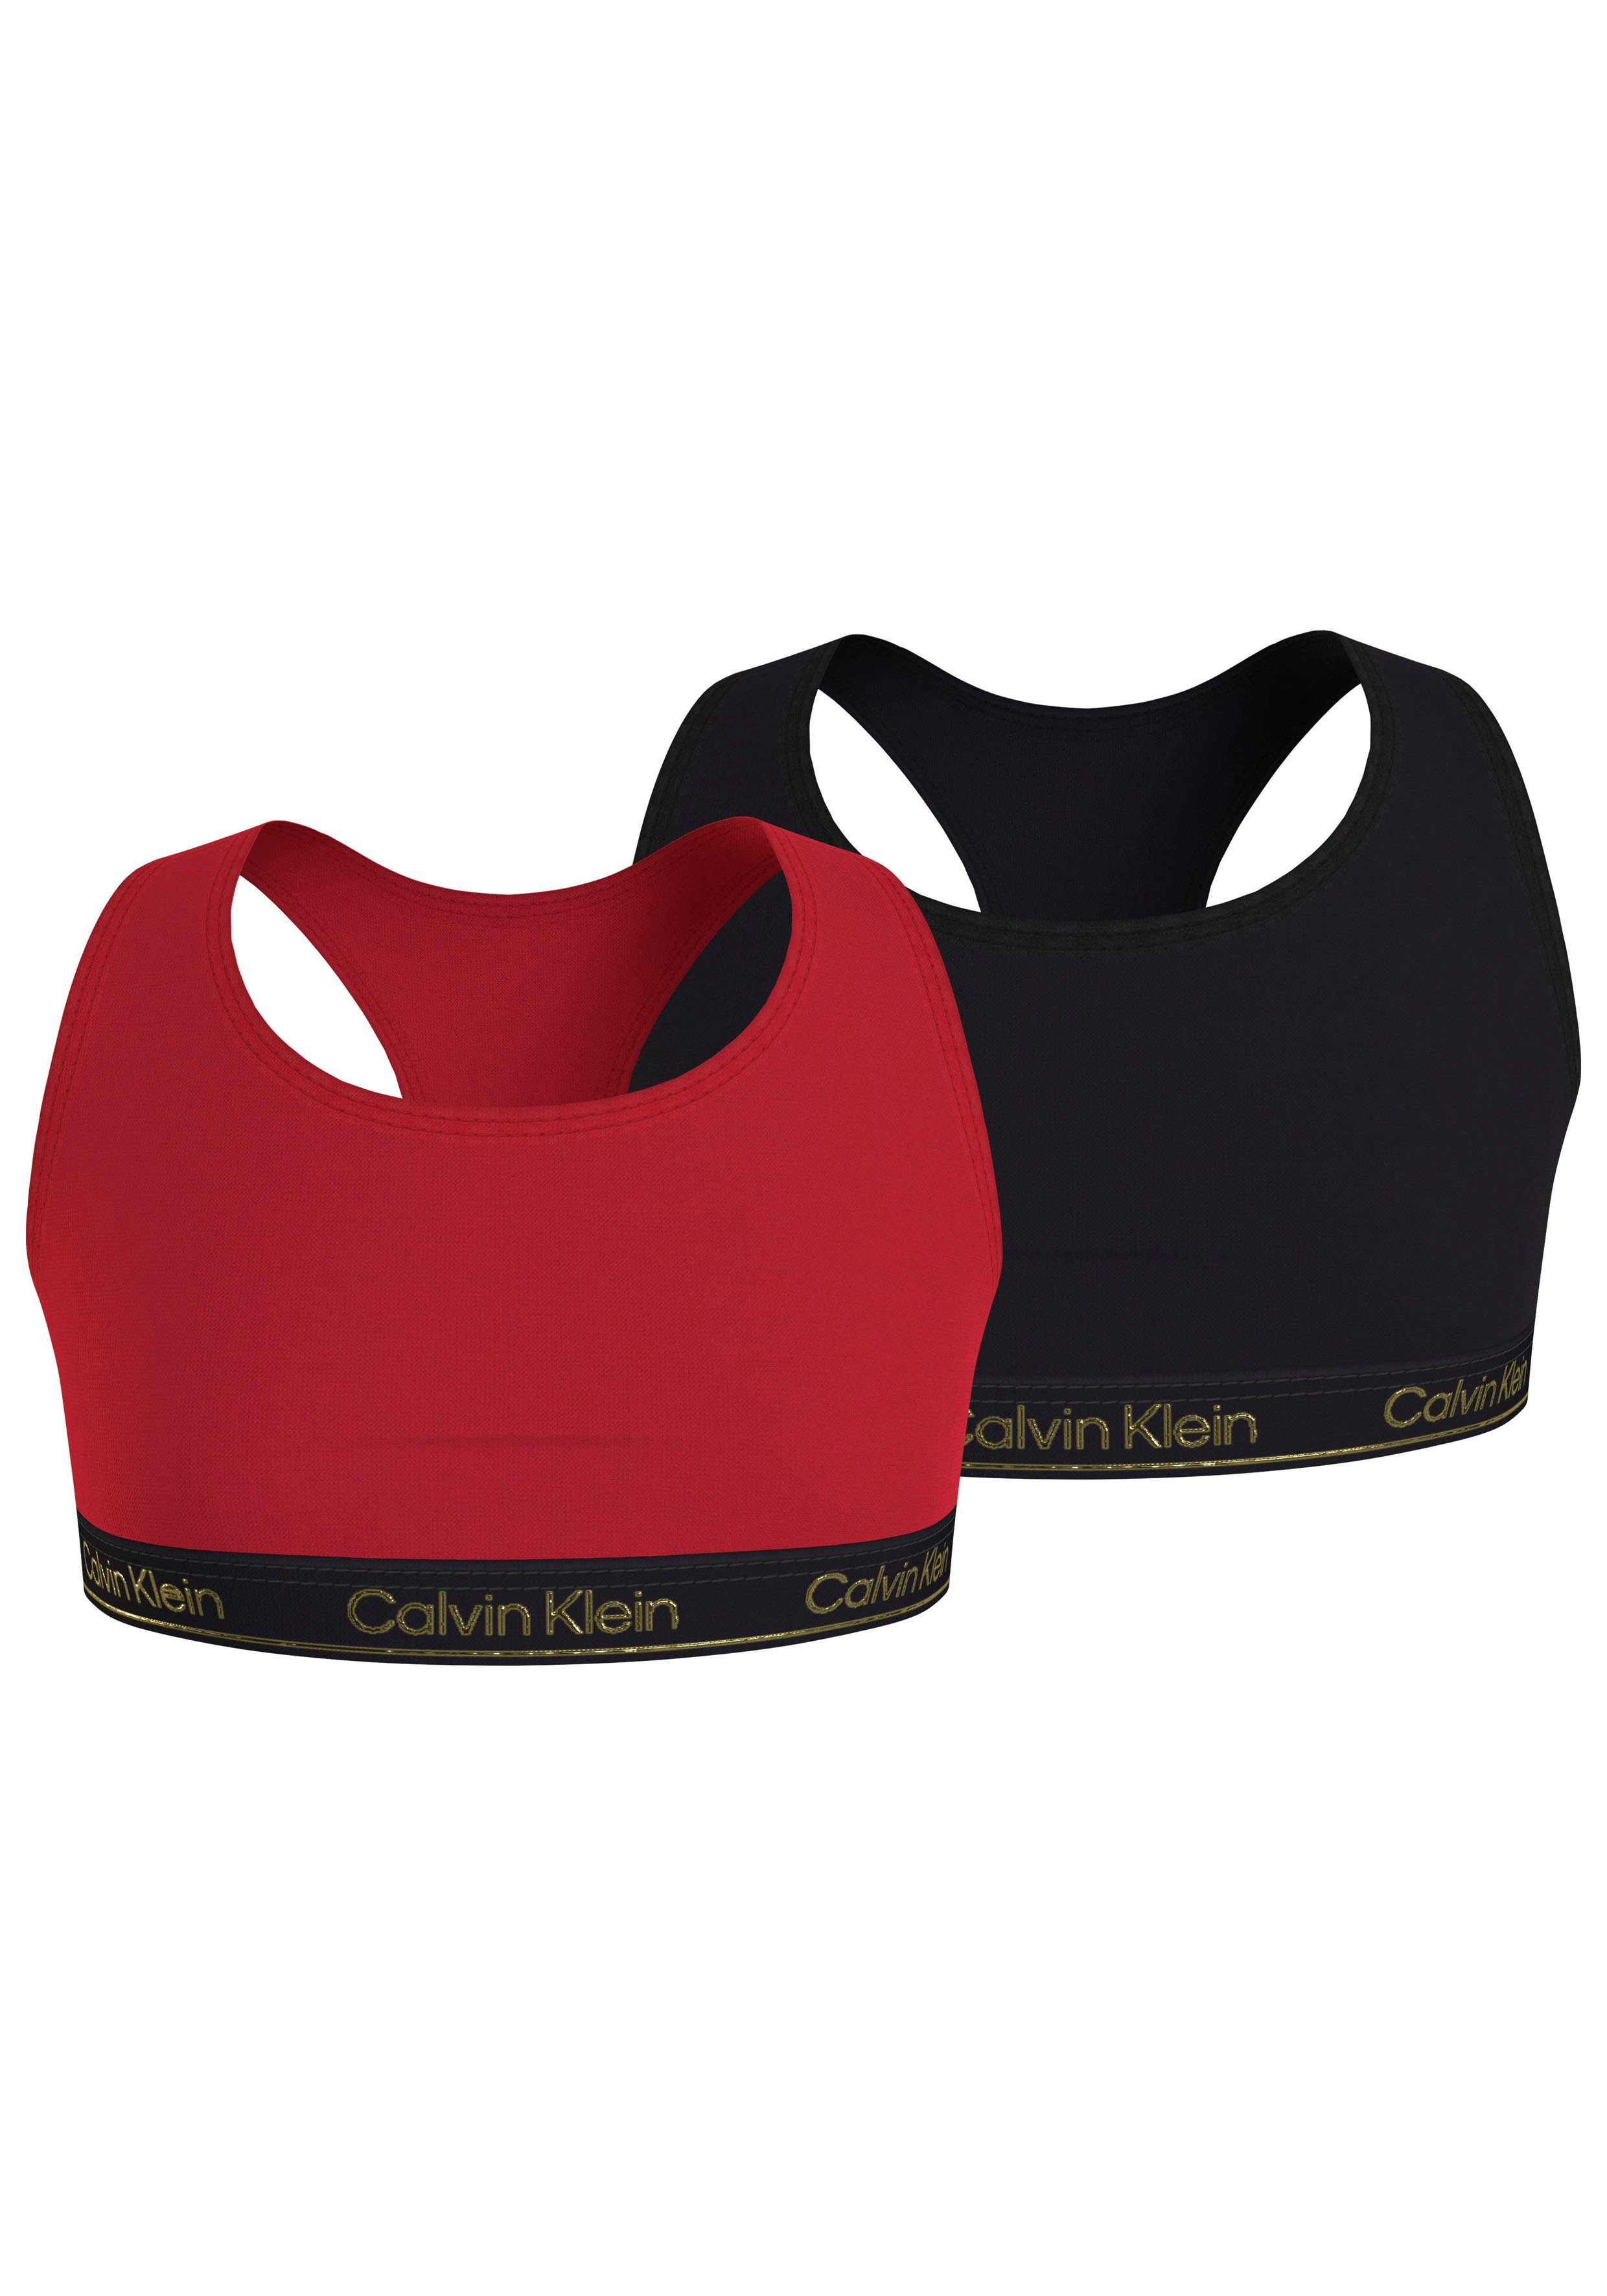 Klein 2er-Pack) in Underwear 2PK angesagten Calvin Bralette (Packung, Redglare/Pvhblack BRALETTE Farben